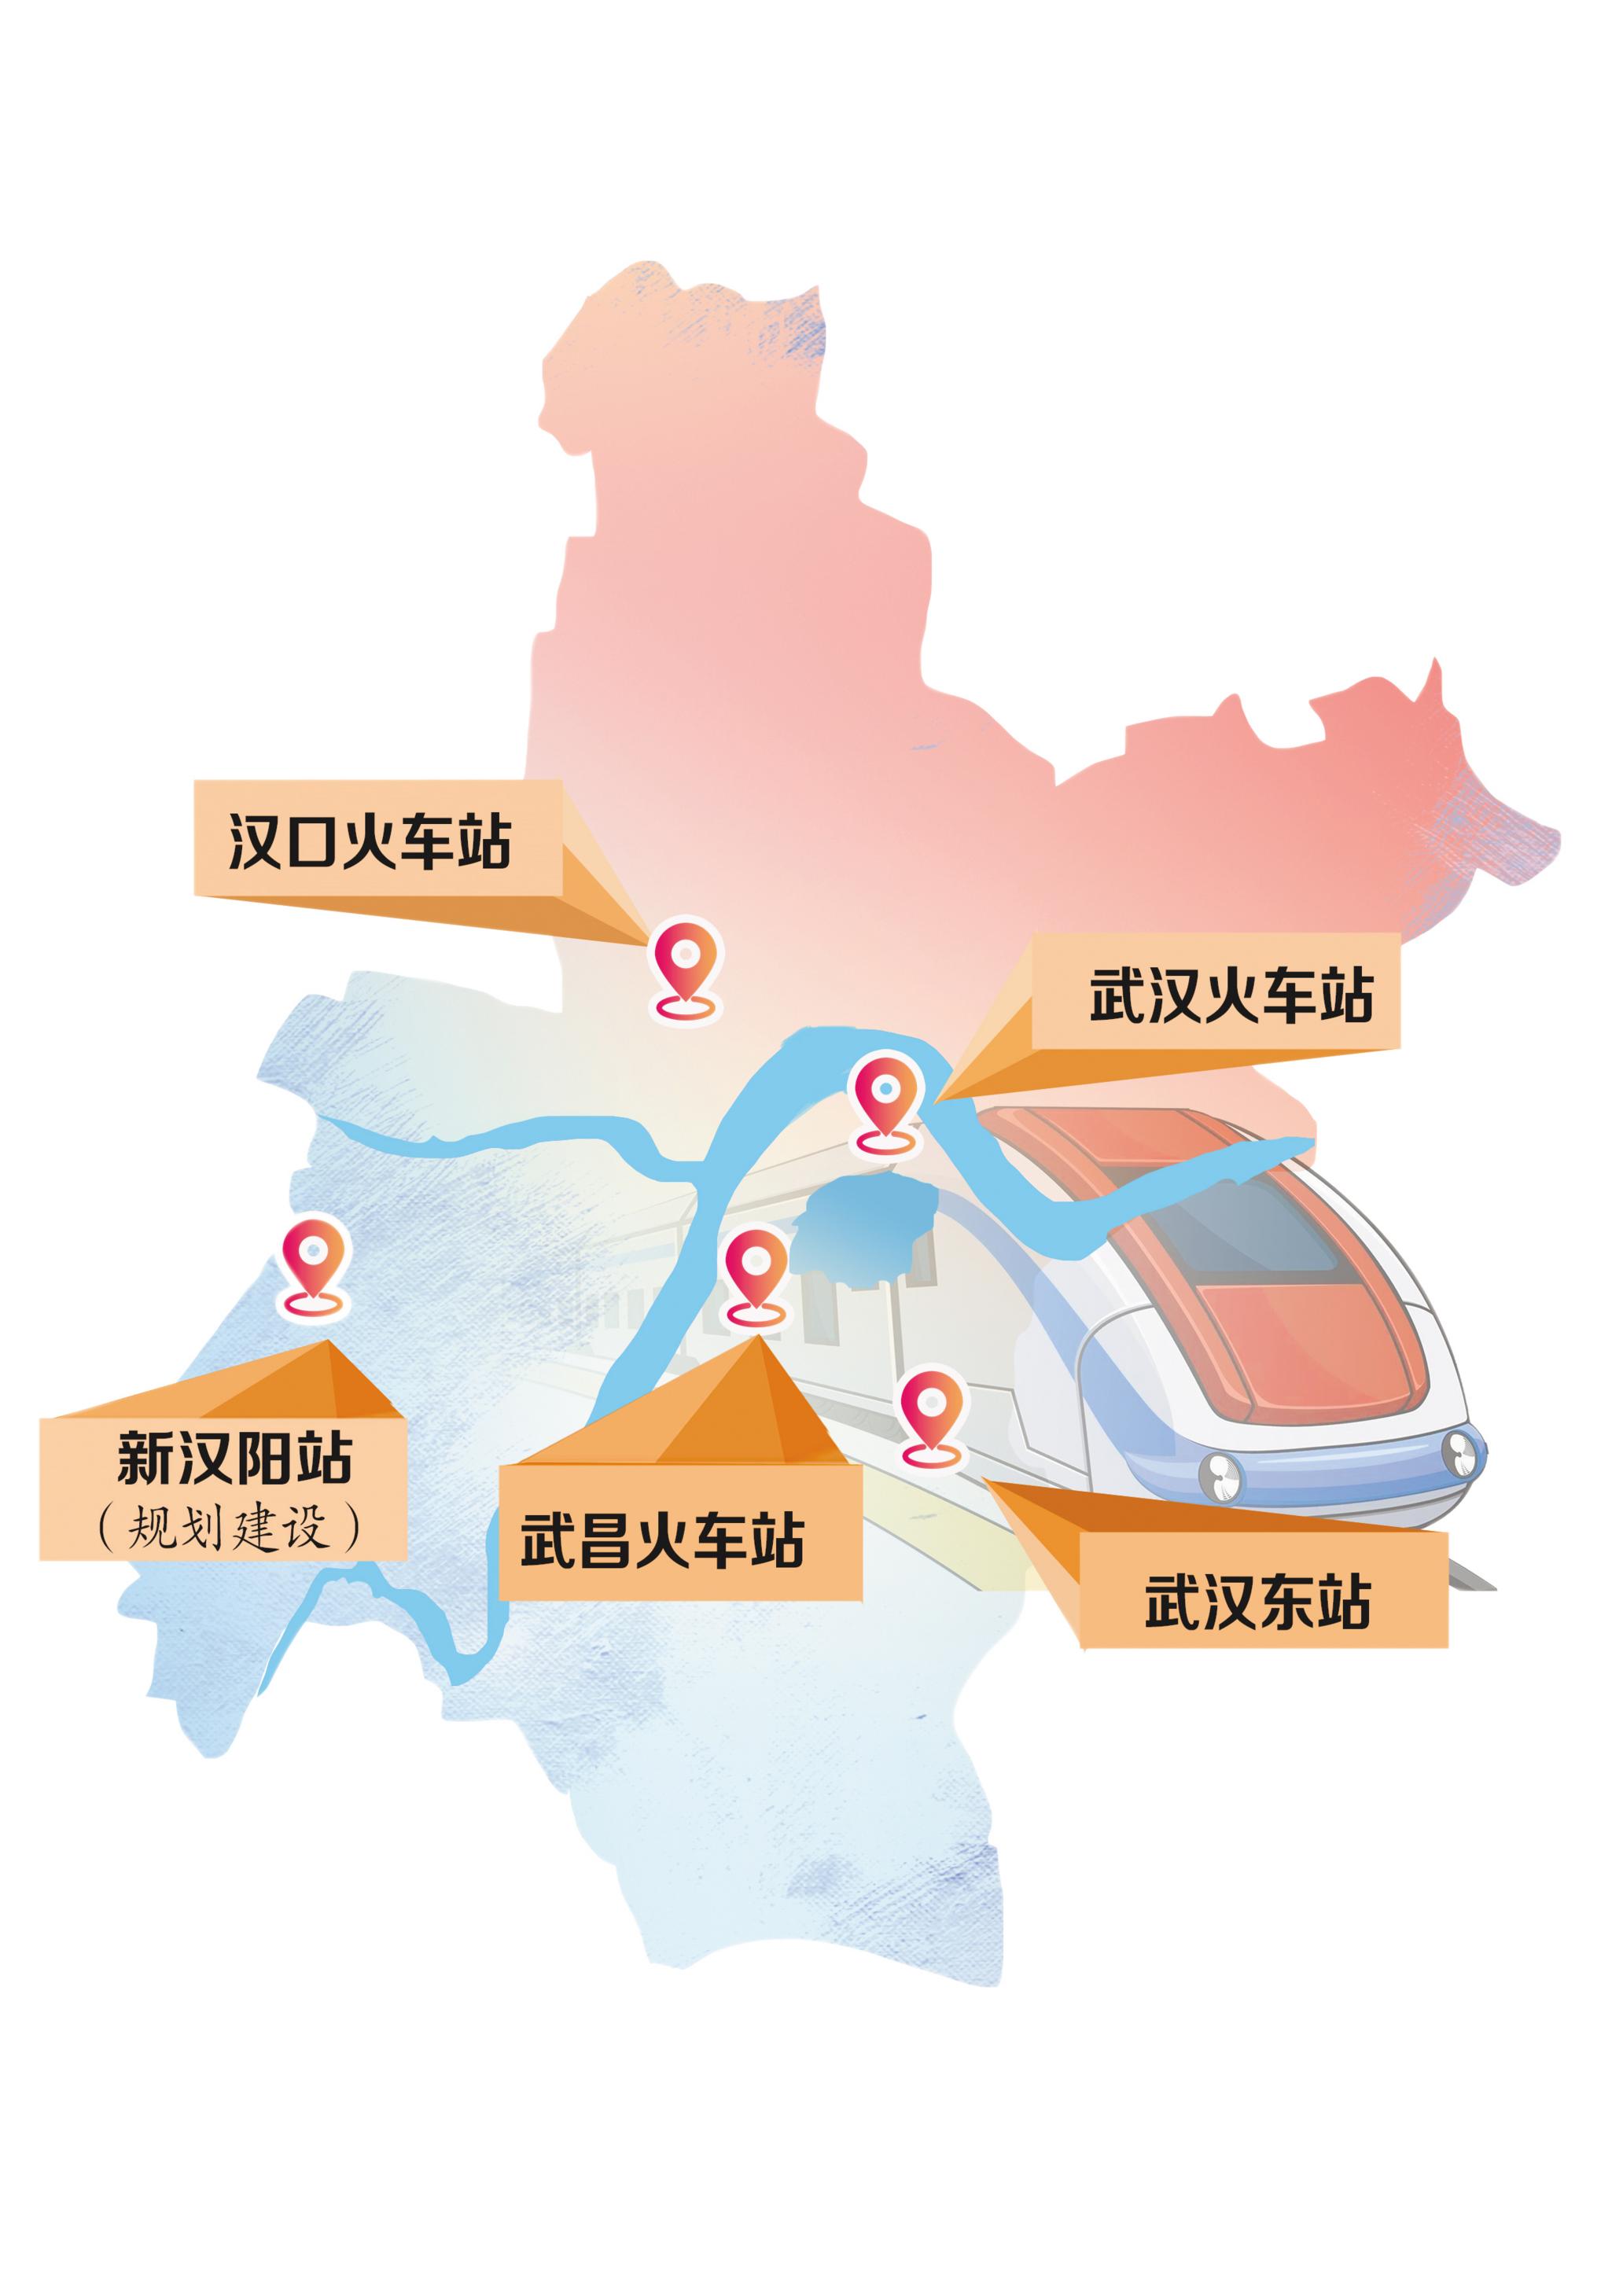 武汉高铁站地图图片